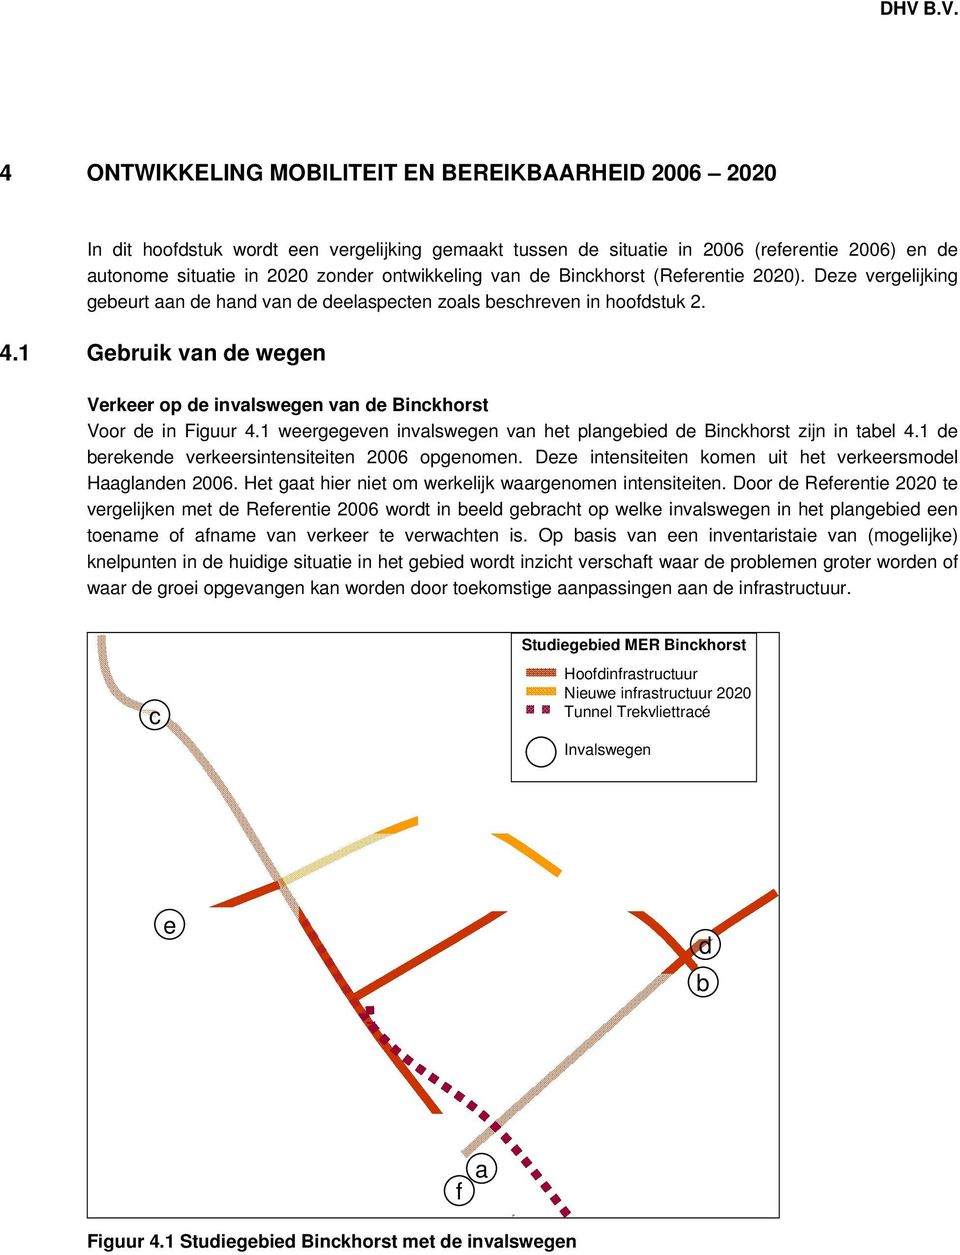 1 Gebruik van de wegen Verkeer op de invalswegen van de Binckhorst Voor de in Figuur 4.1 weergegeven invalswegen van het plangebied de Binckhorst zijn in tabel 4.